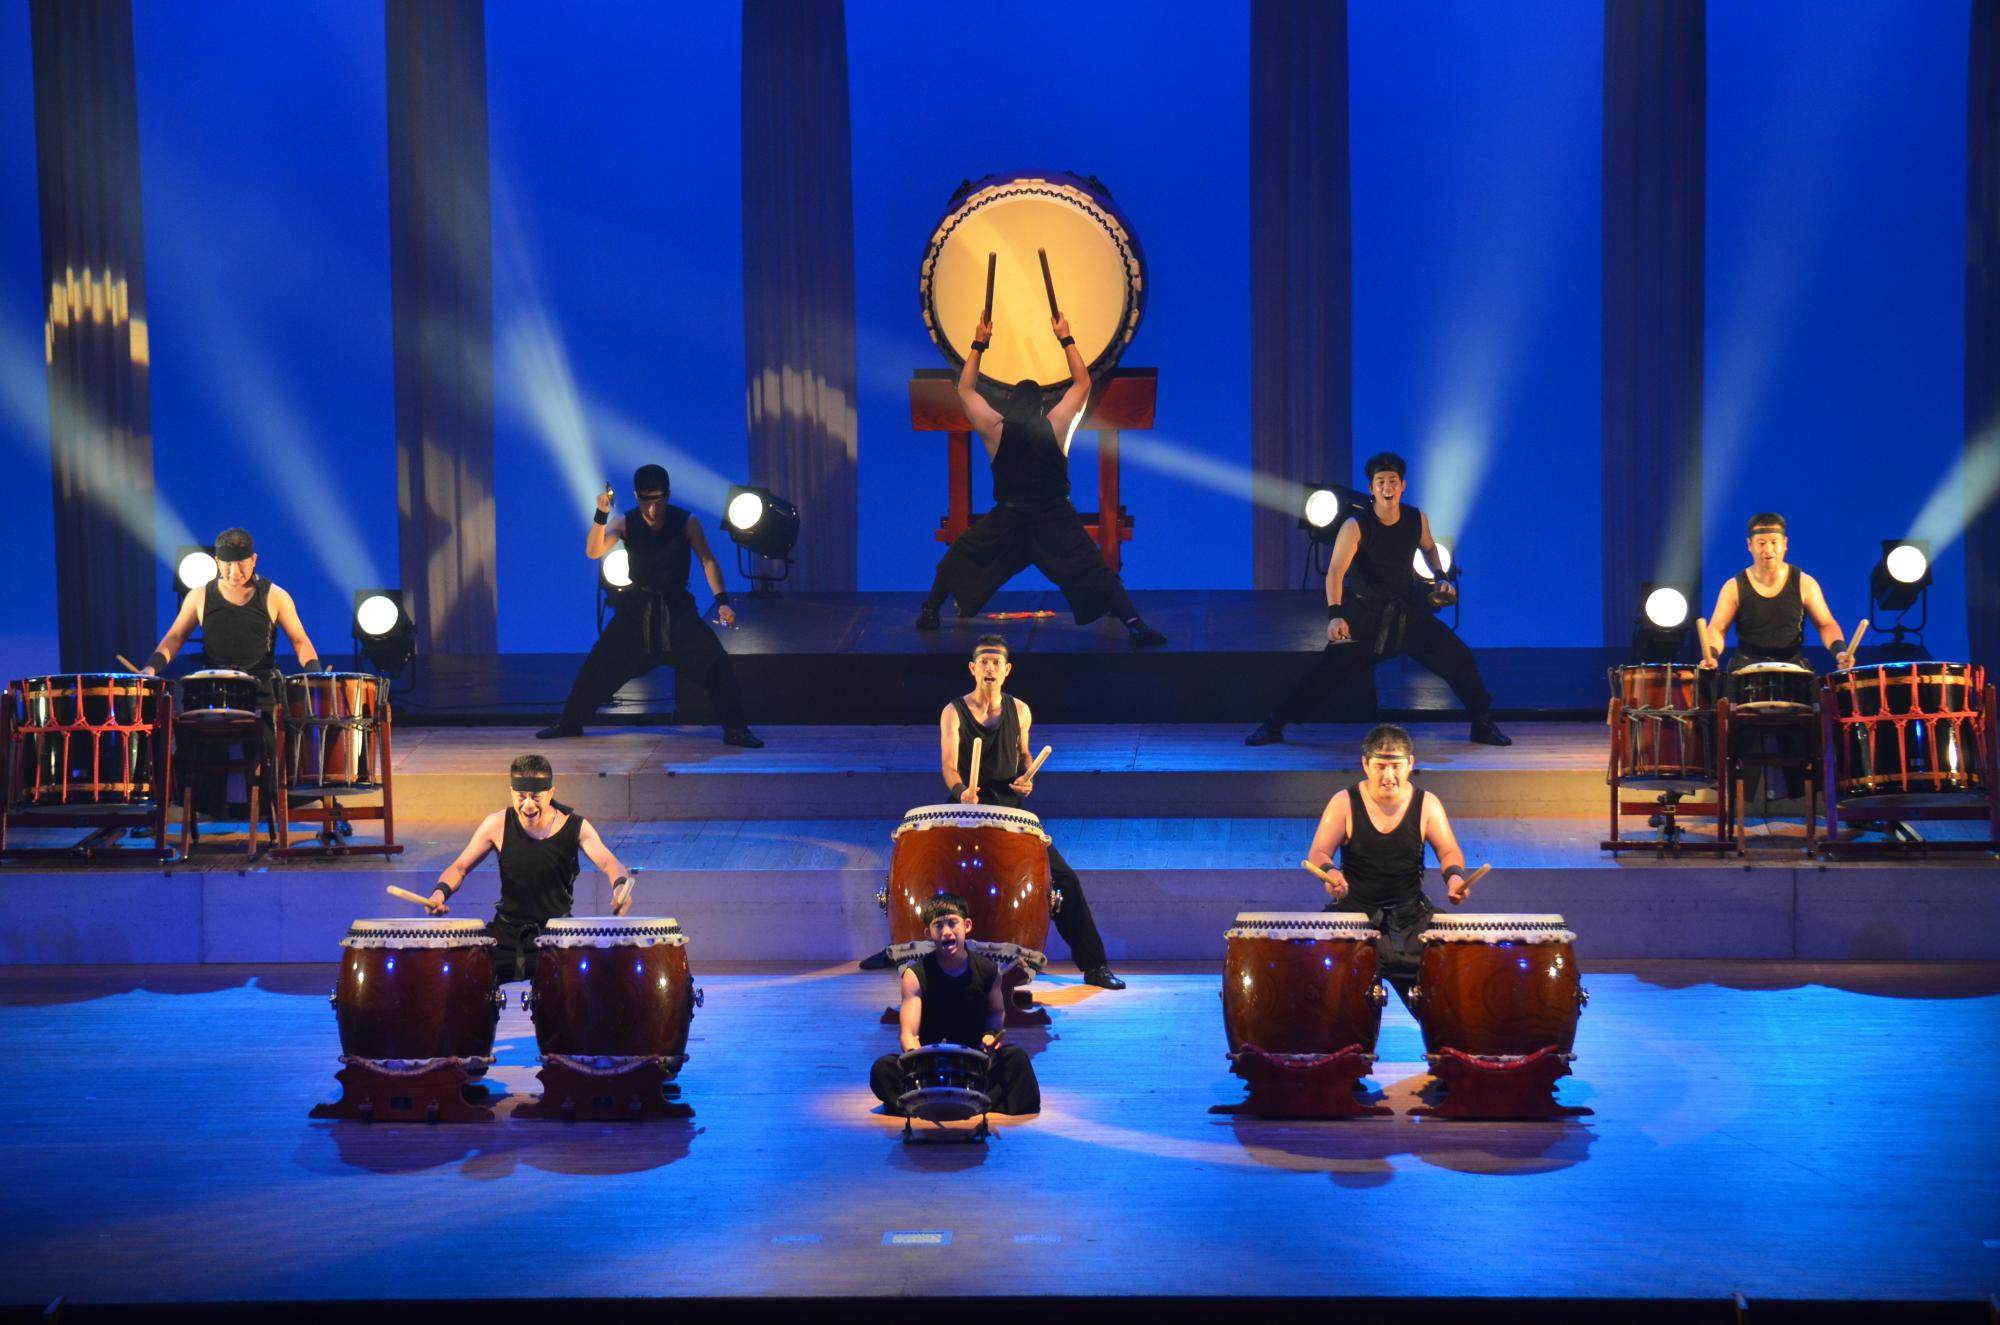 青い背景に黄色い光を透かす大太鼓を中央に置いた月夜をイメージした和太鼓演奏の写真